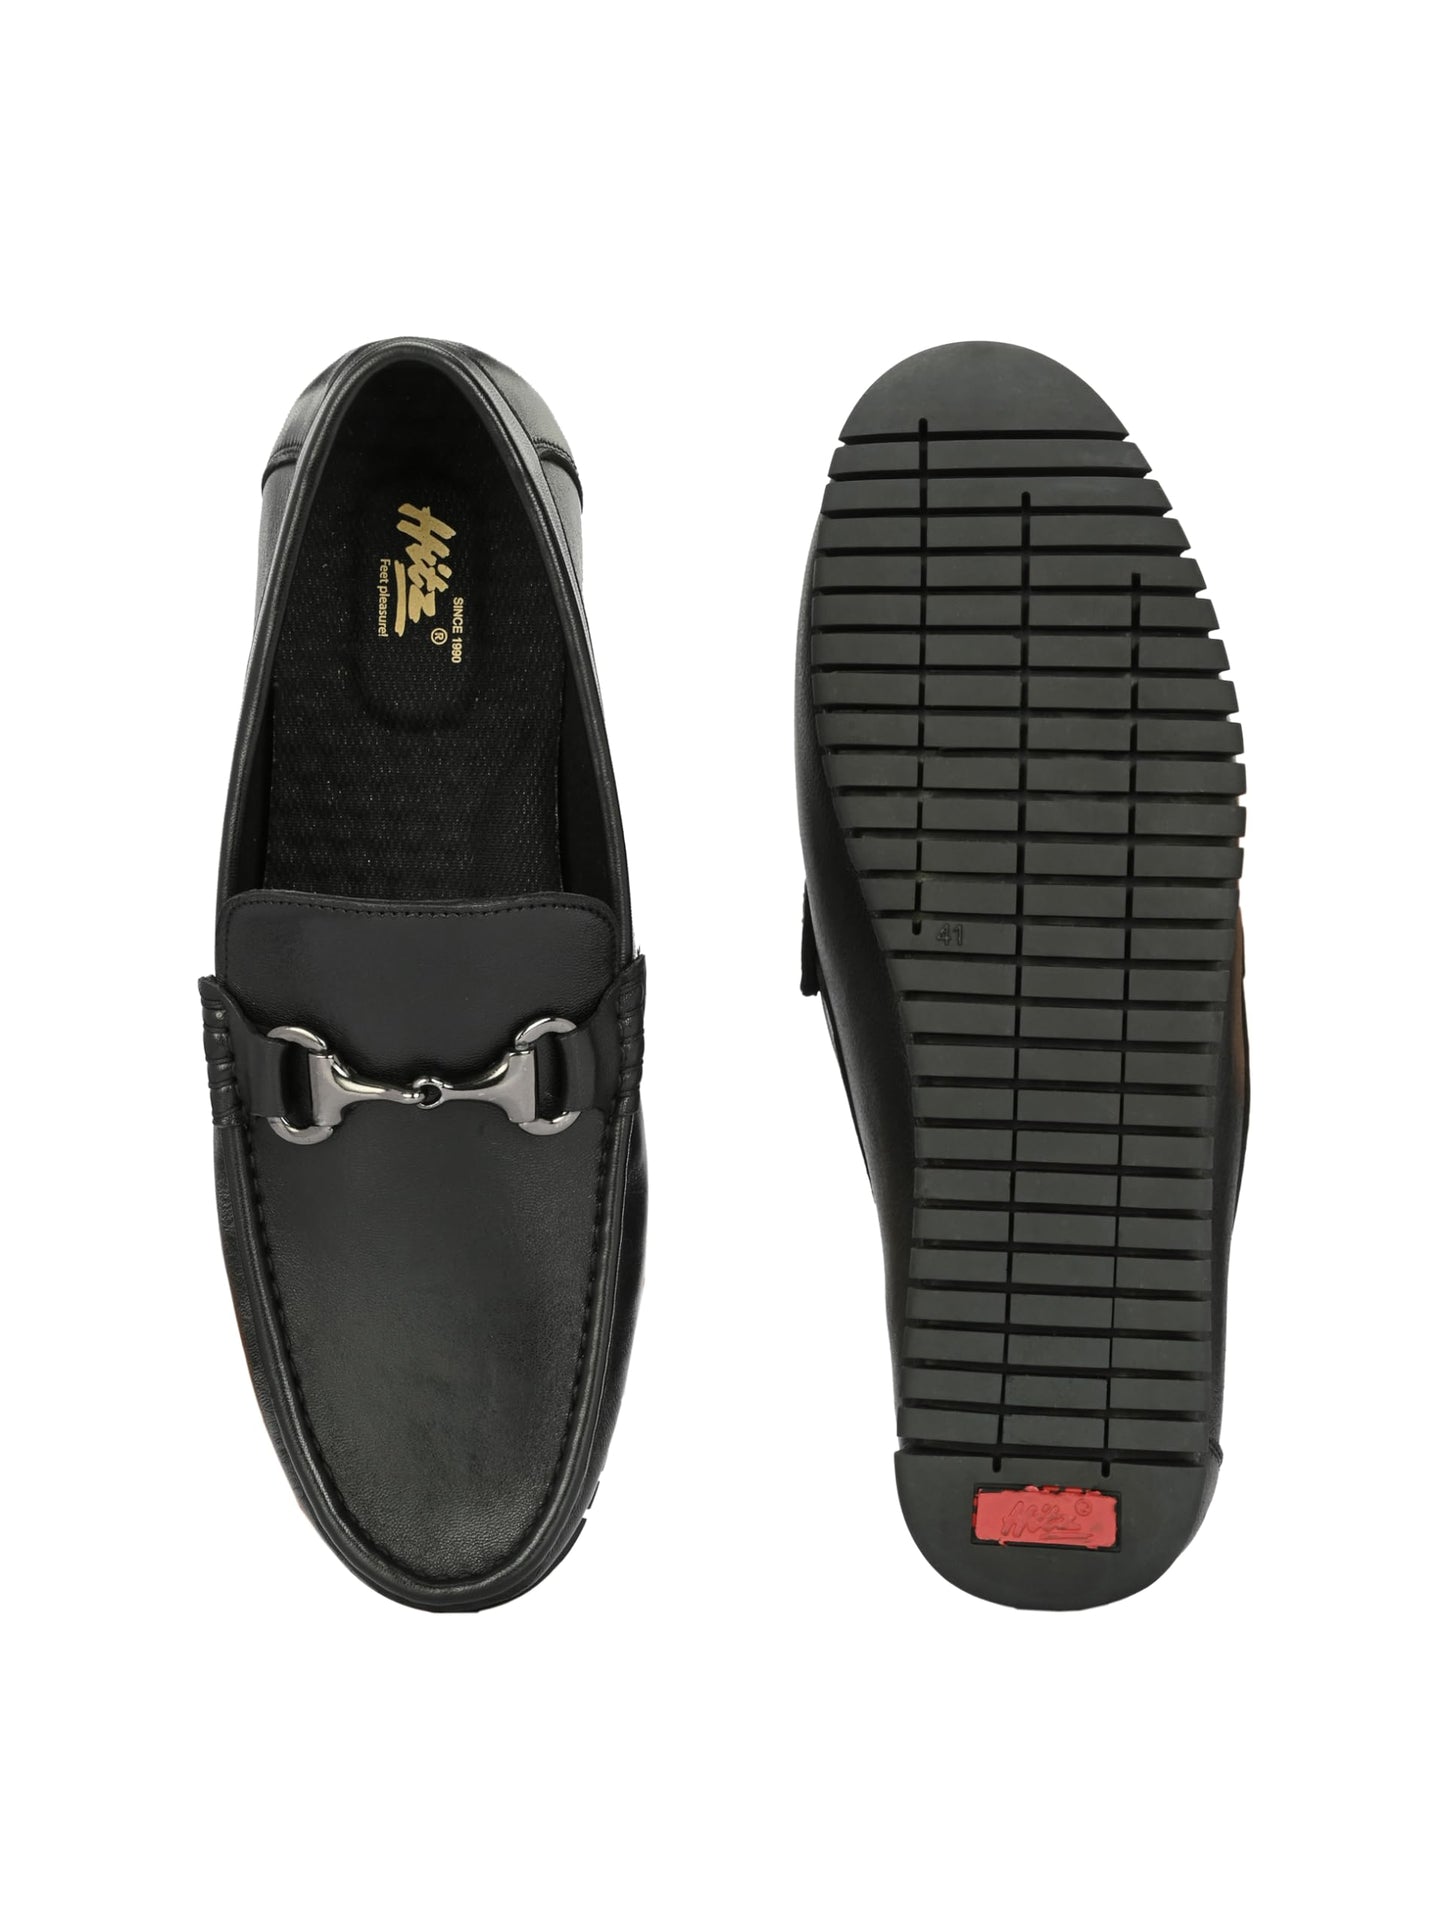 HITZ Men's Black Leather Slip-On Comfort Loafer Shoes - 11